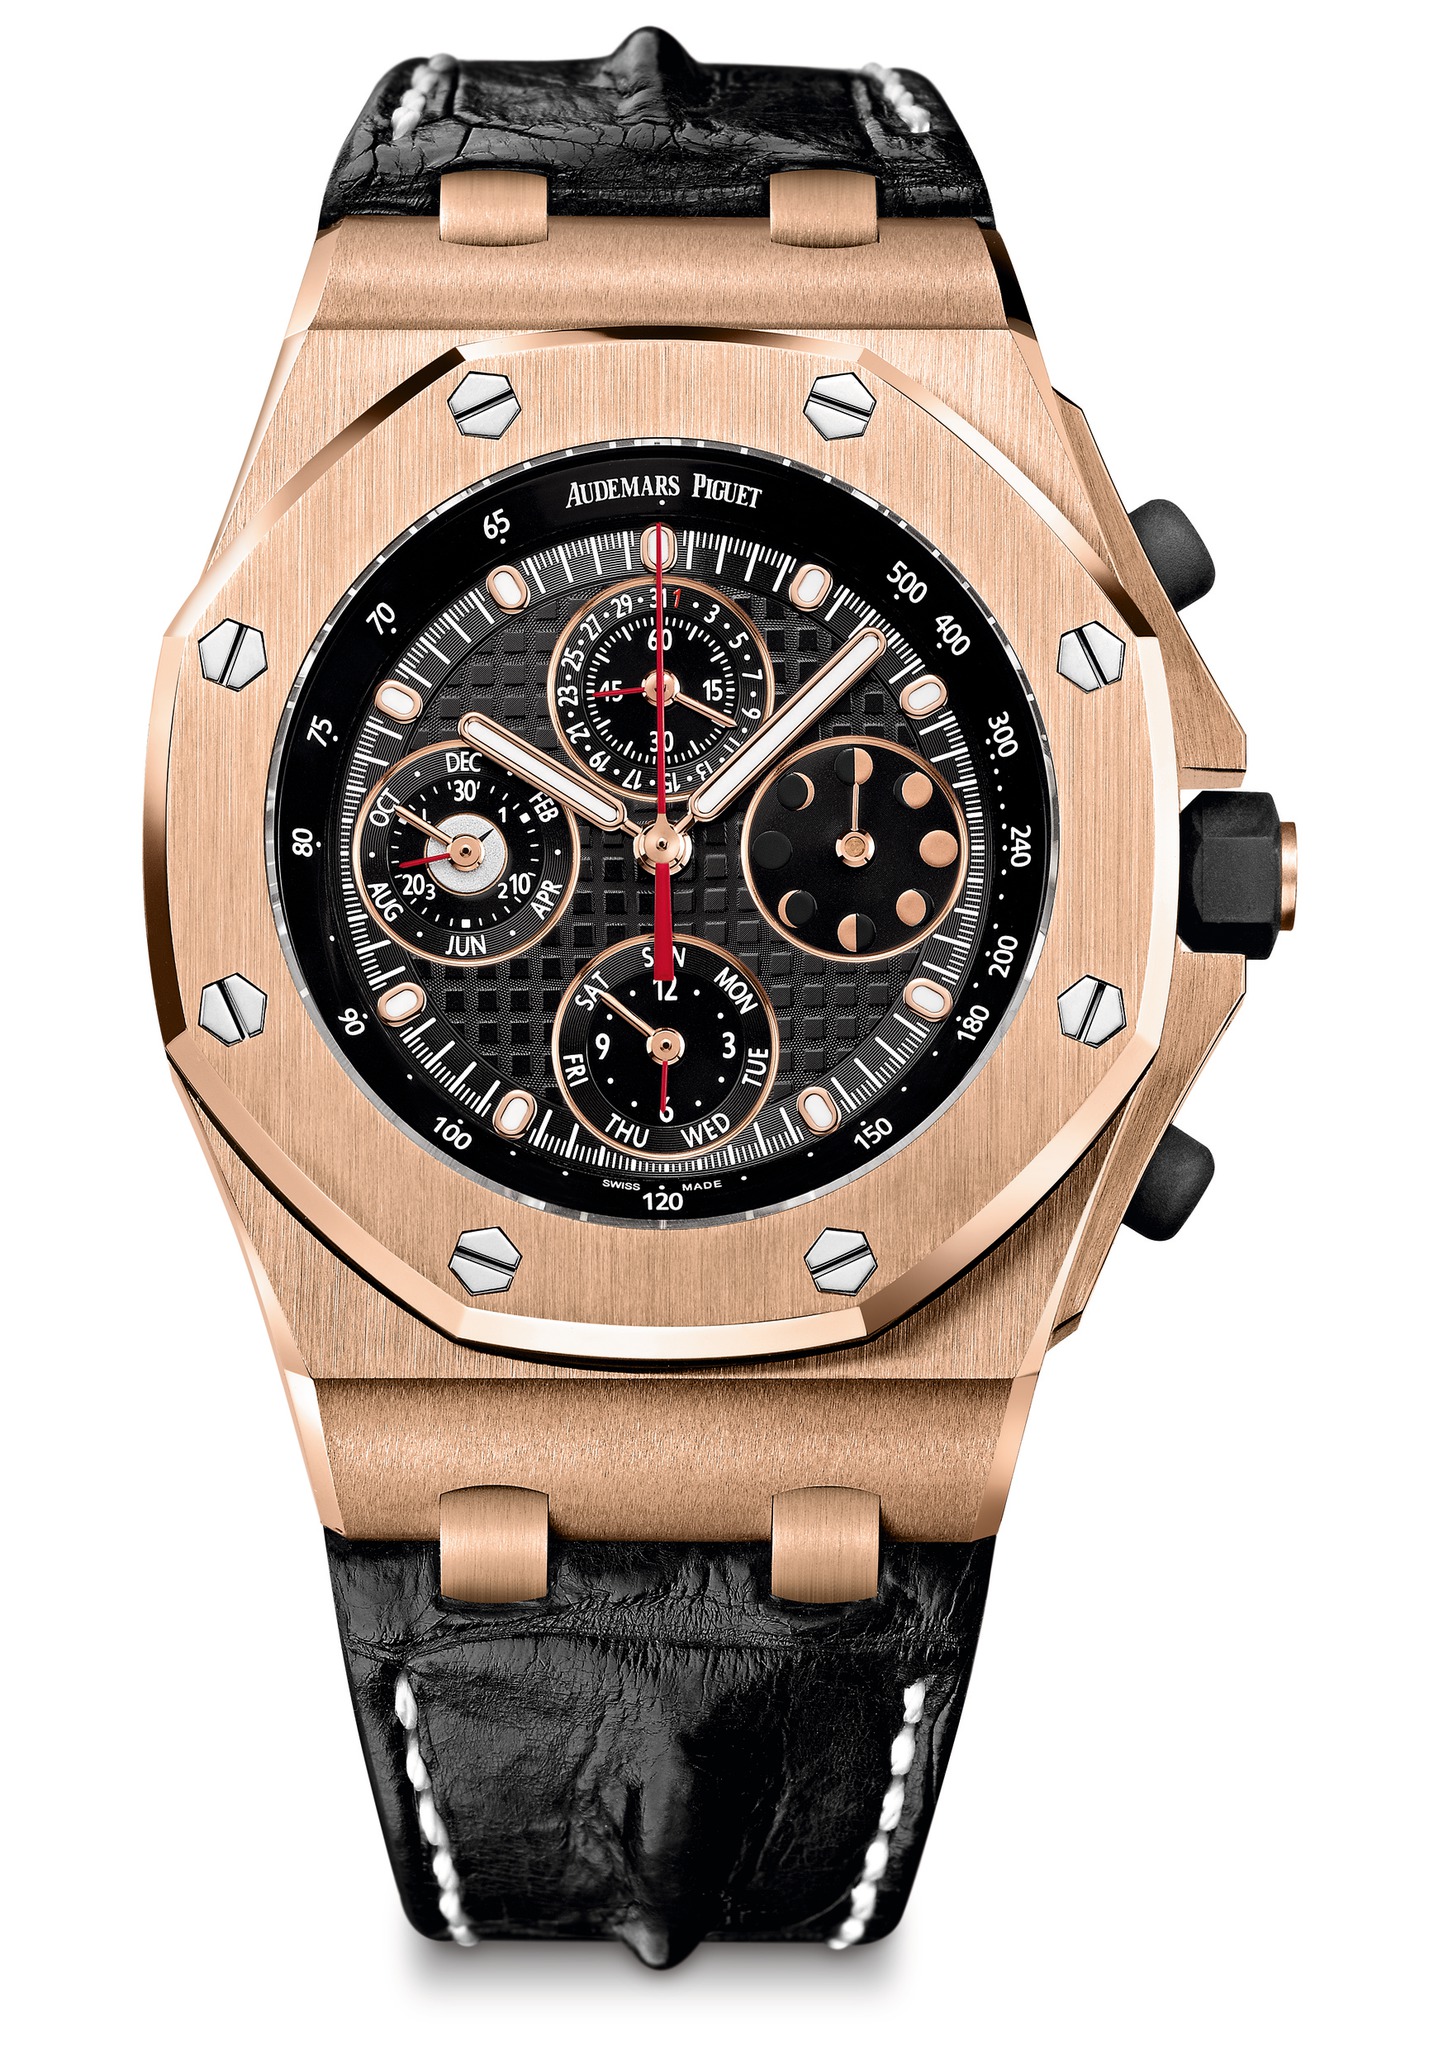 Audemars Piguet Royal Oak Offshore Perpetual Calendar Chronograph Pink Gold watch REF: 26209OR.OO.D101CR.01